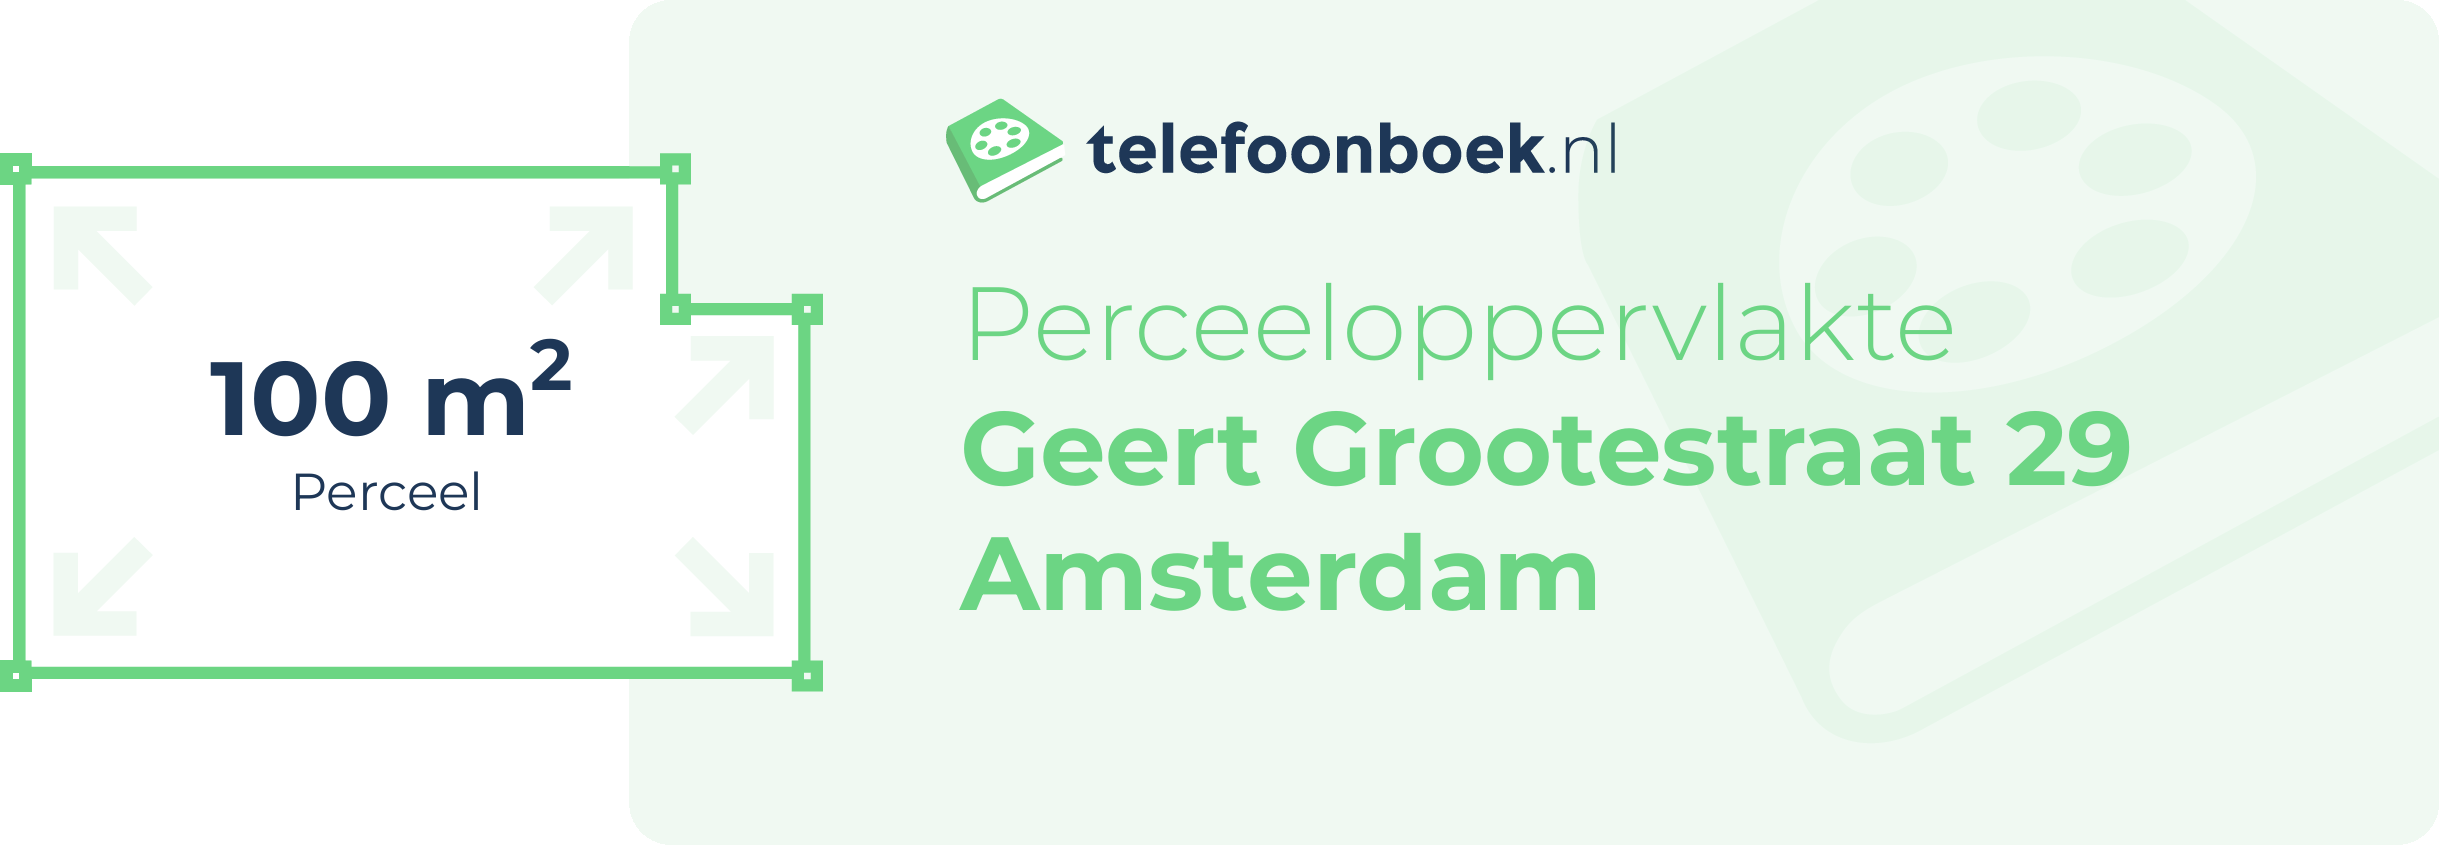 Perceeloppervlakte Geert Grootestraat 29 Amsterdam